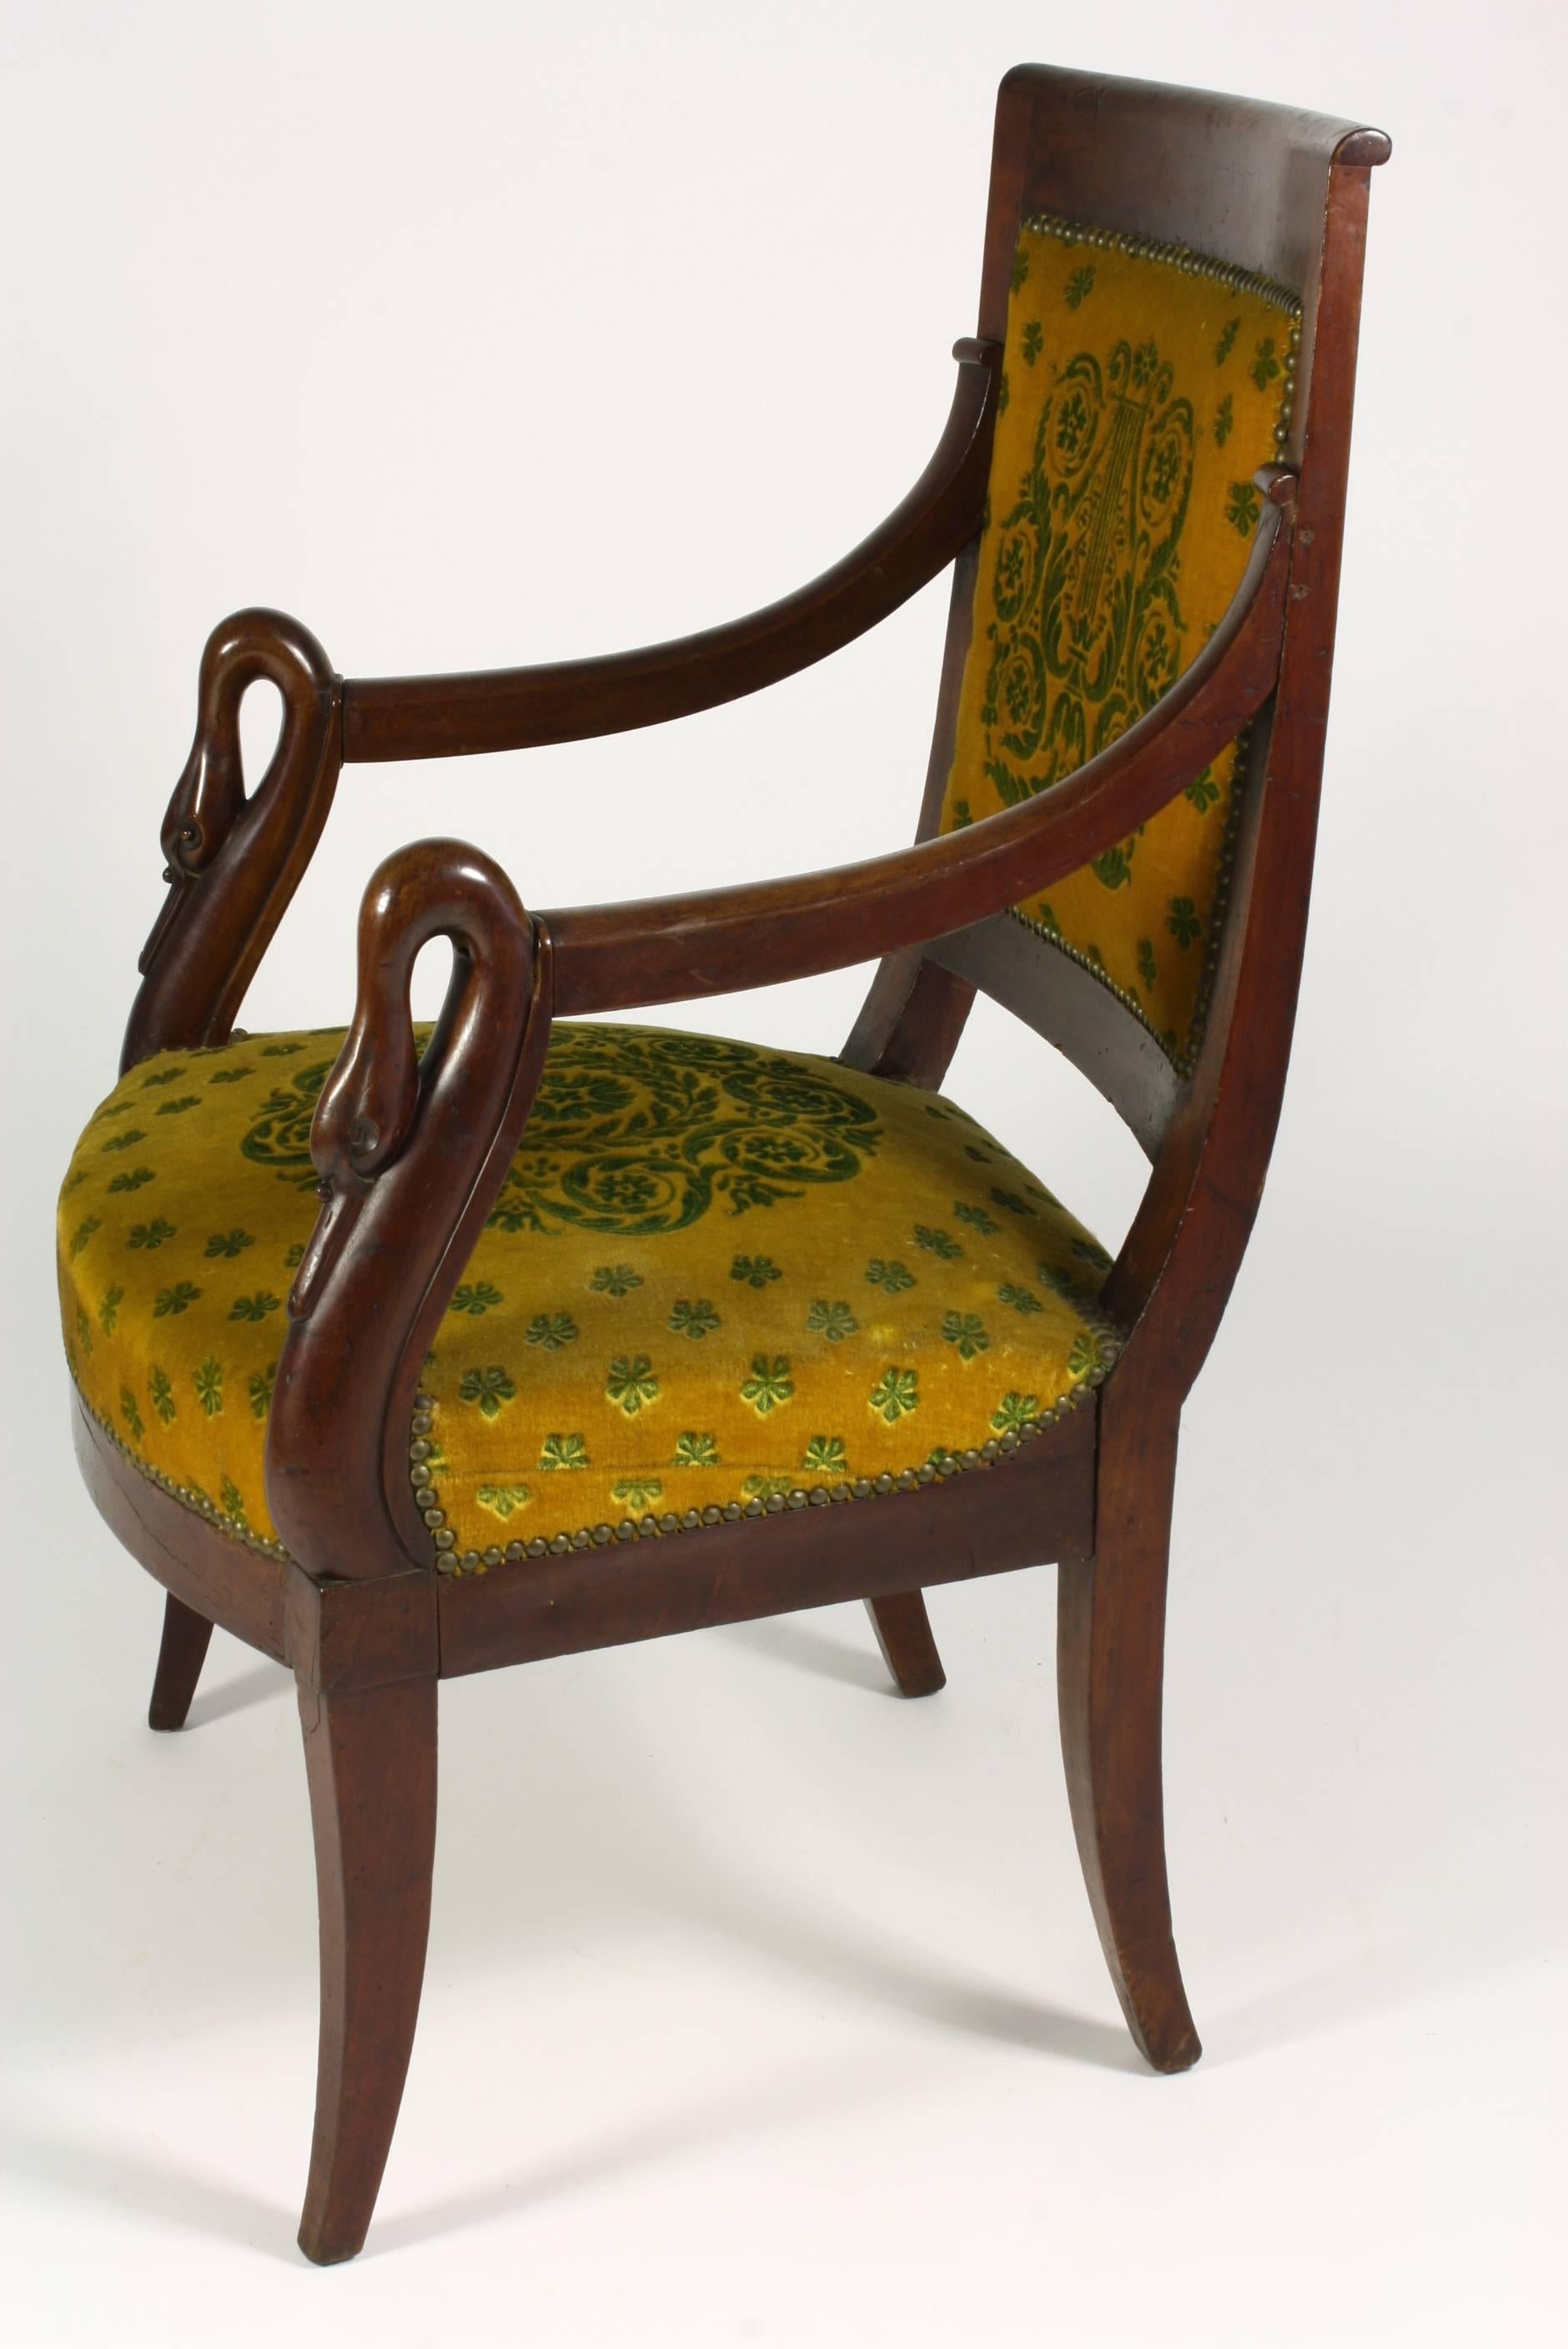 Fauteuil d'époque Empire en acajou avec pieds sabres et têtes de cygnes sur les accoudoirs.  La chaise est recouverte d'un tissu mohair coupé à motifs néoclassiques.